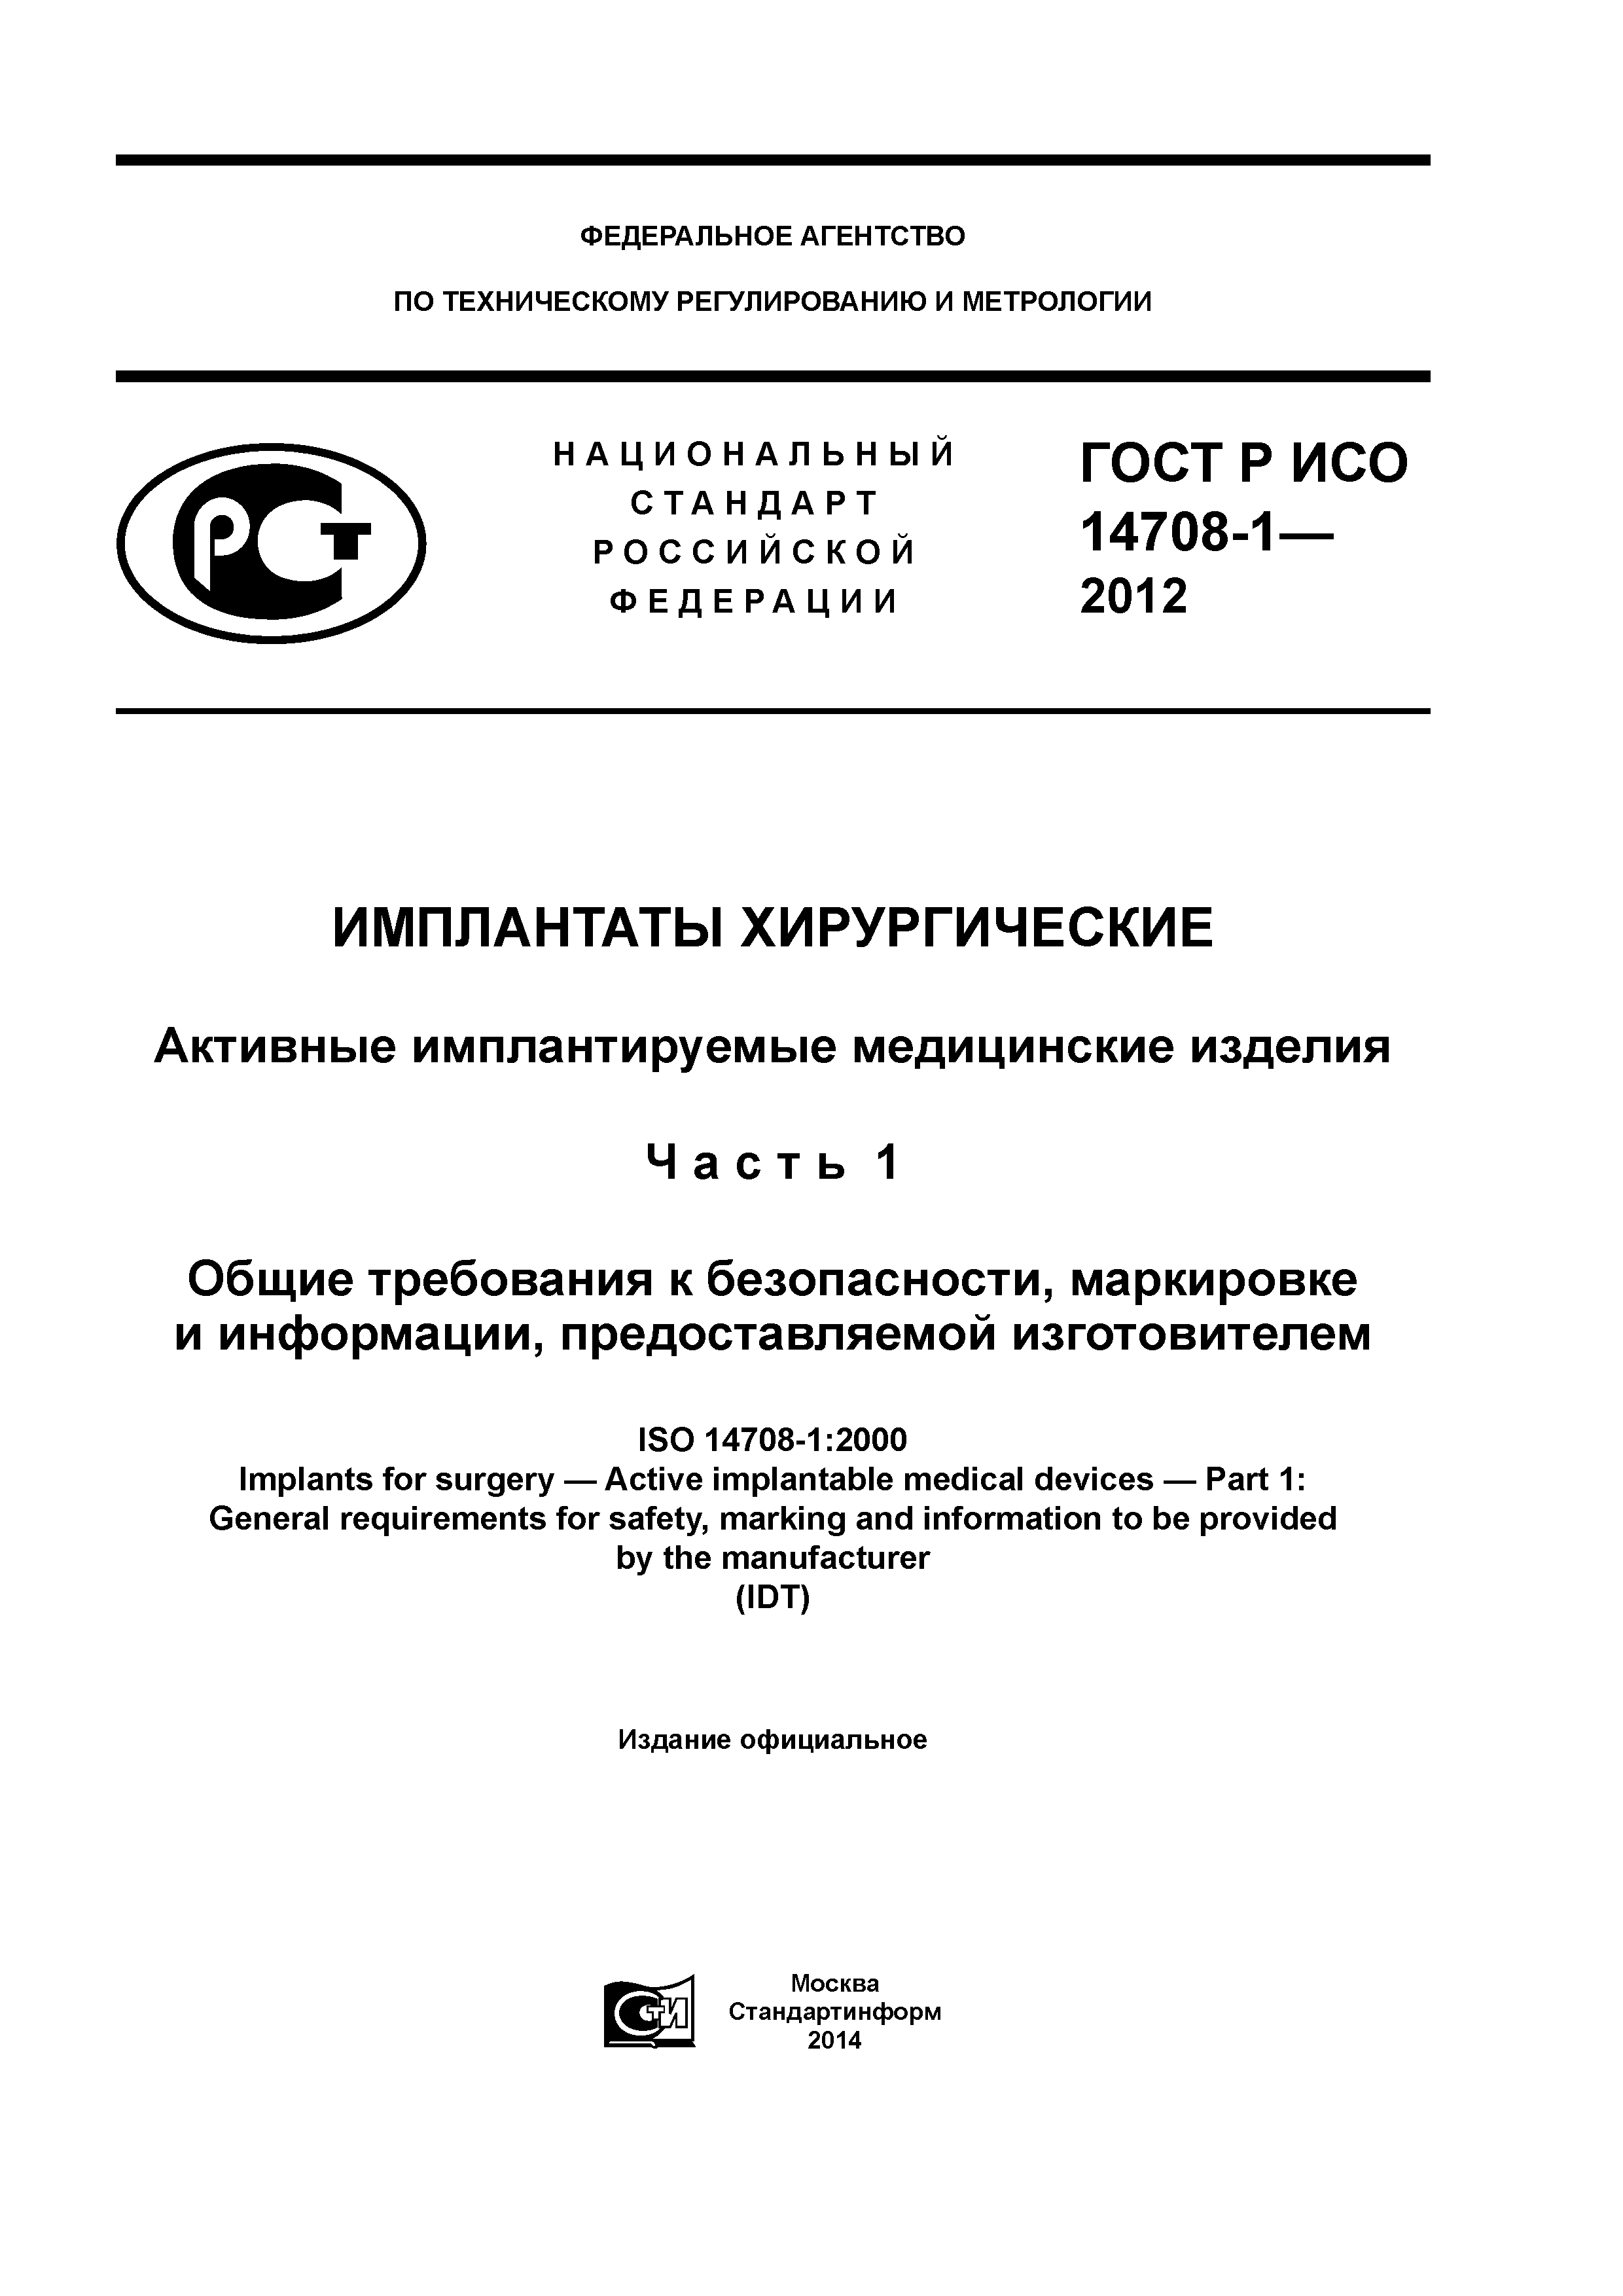 ГОСТ Р ИСО 14708-1-2012